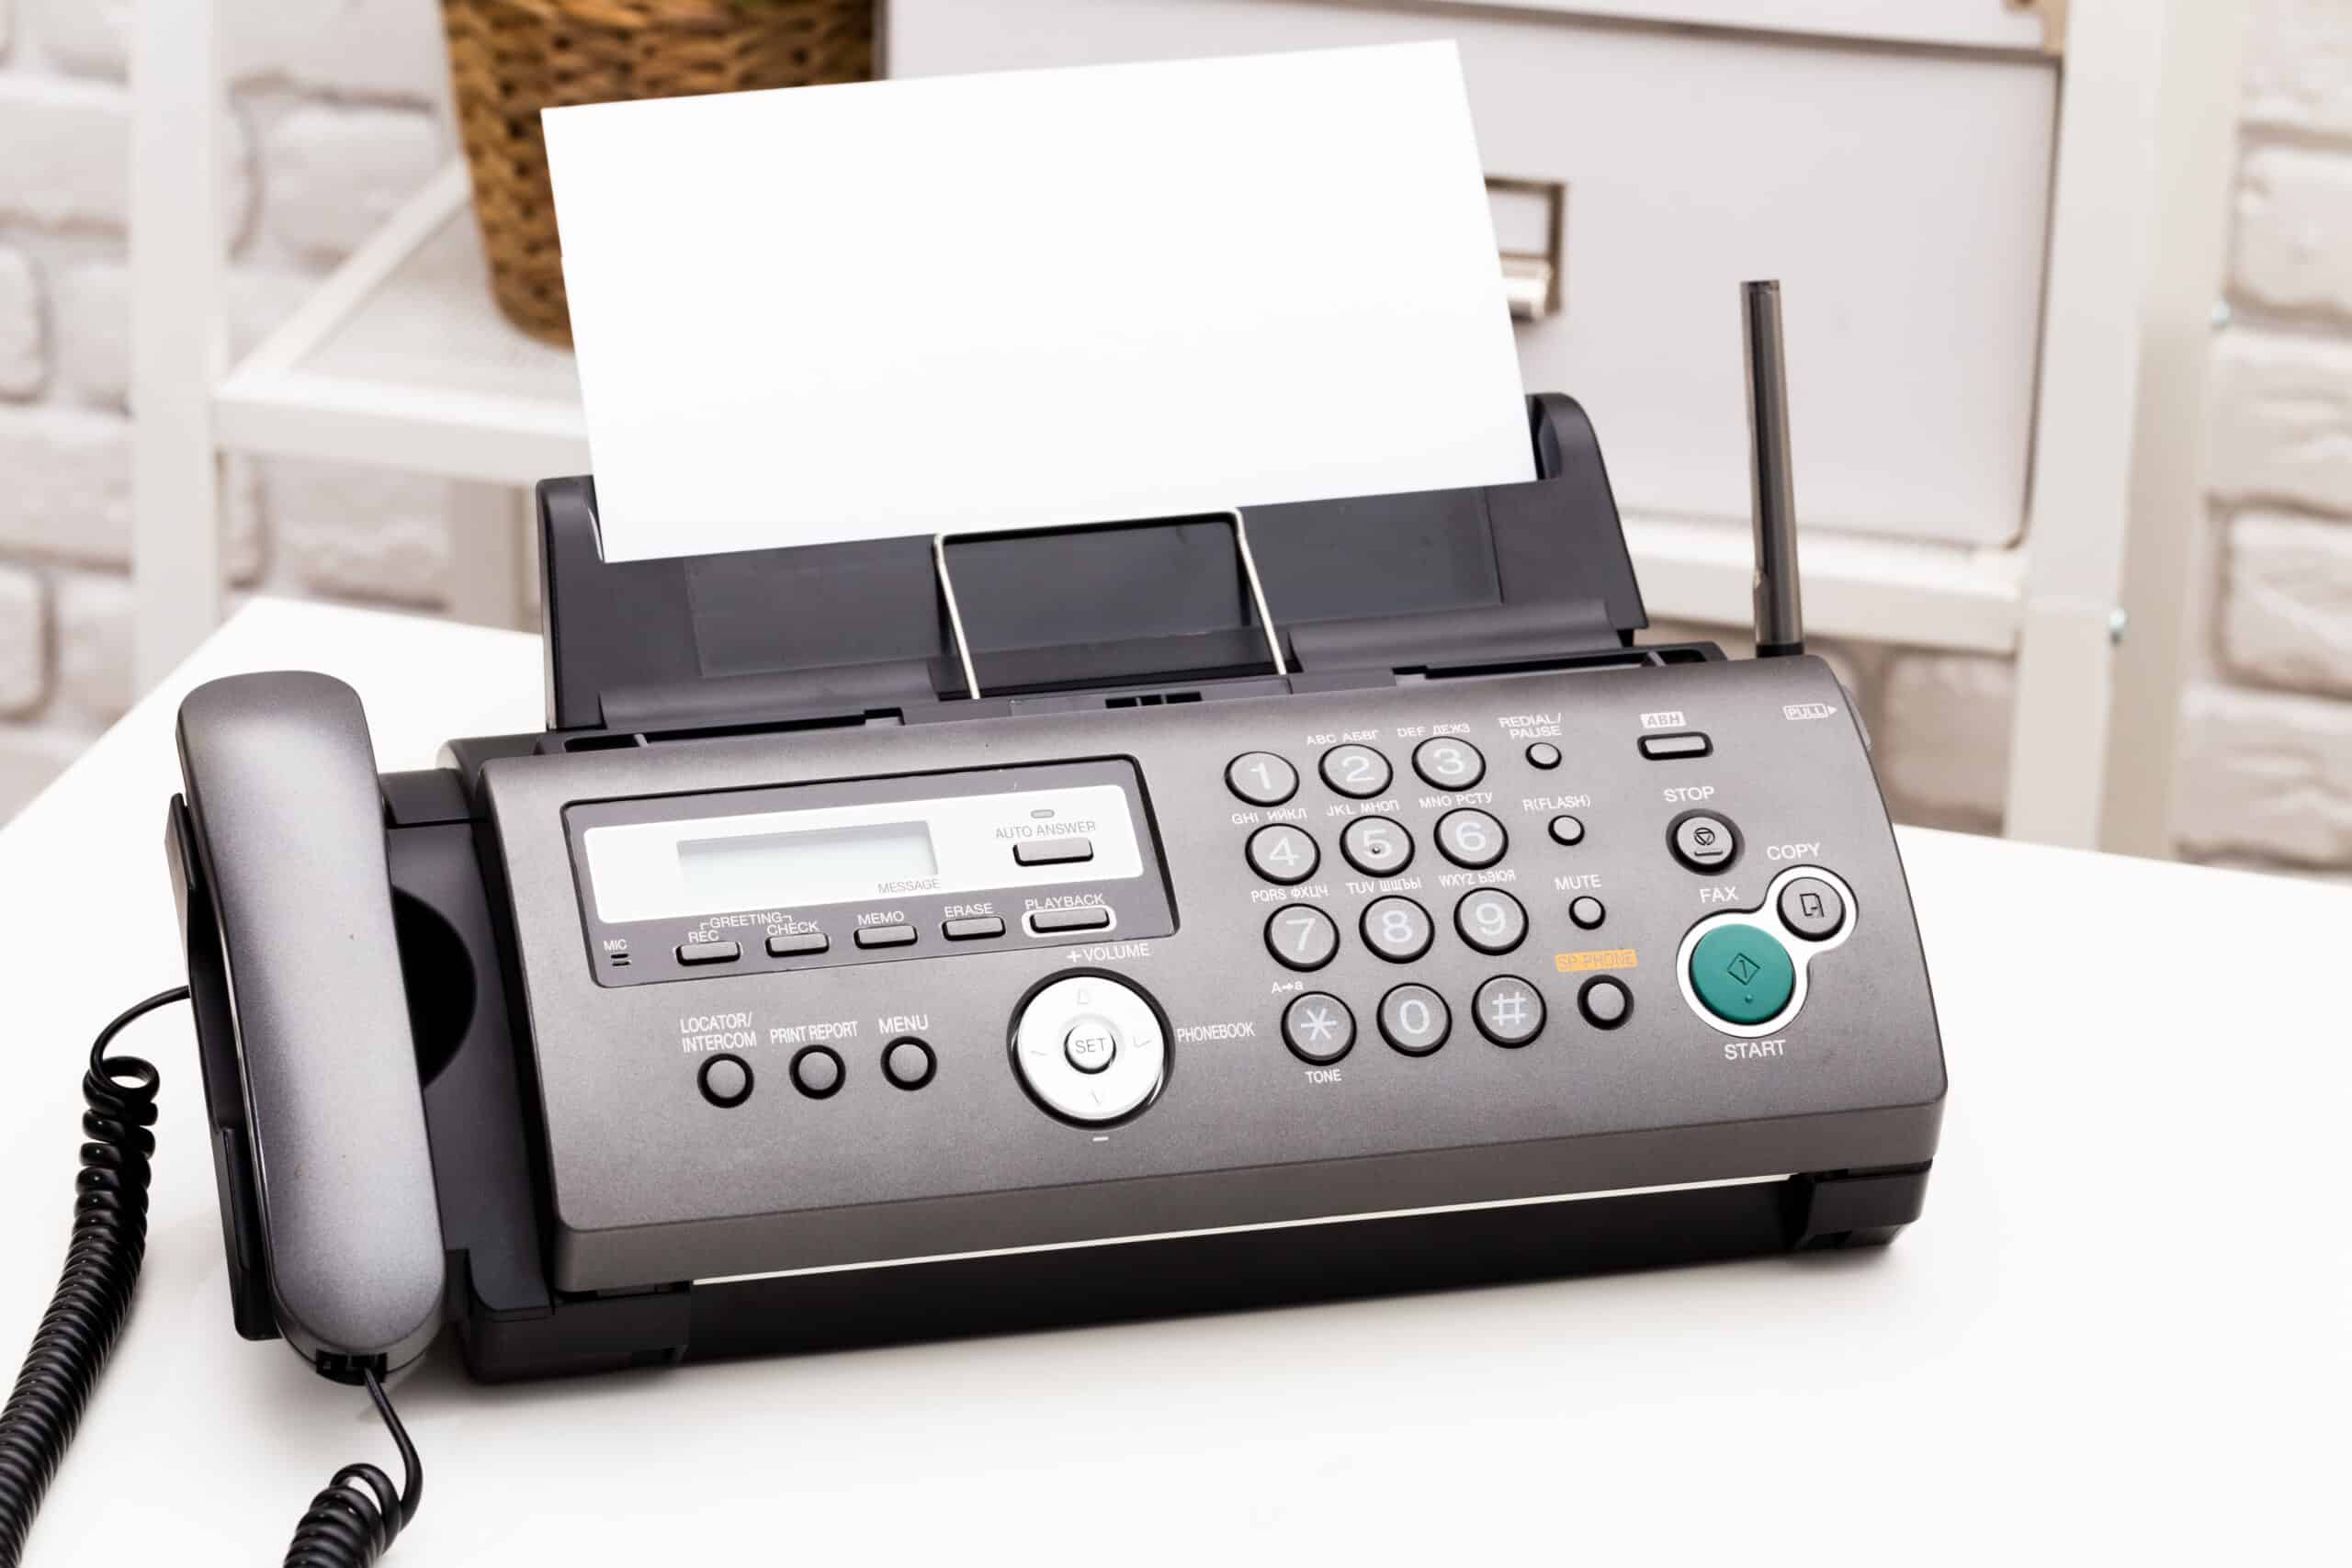 upclose of a fax machine